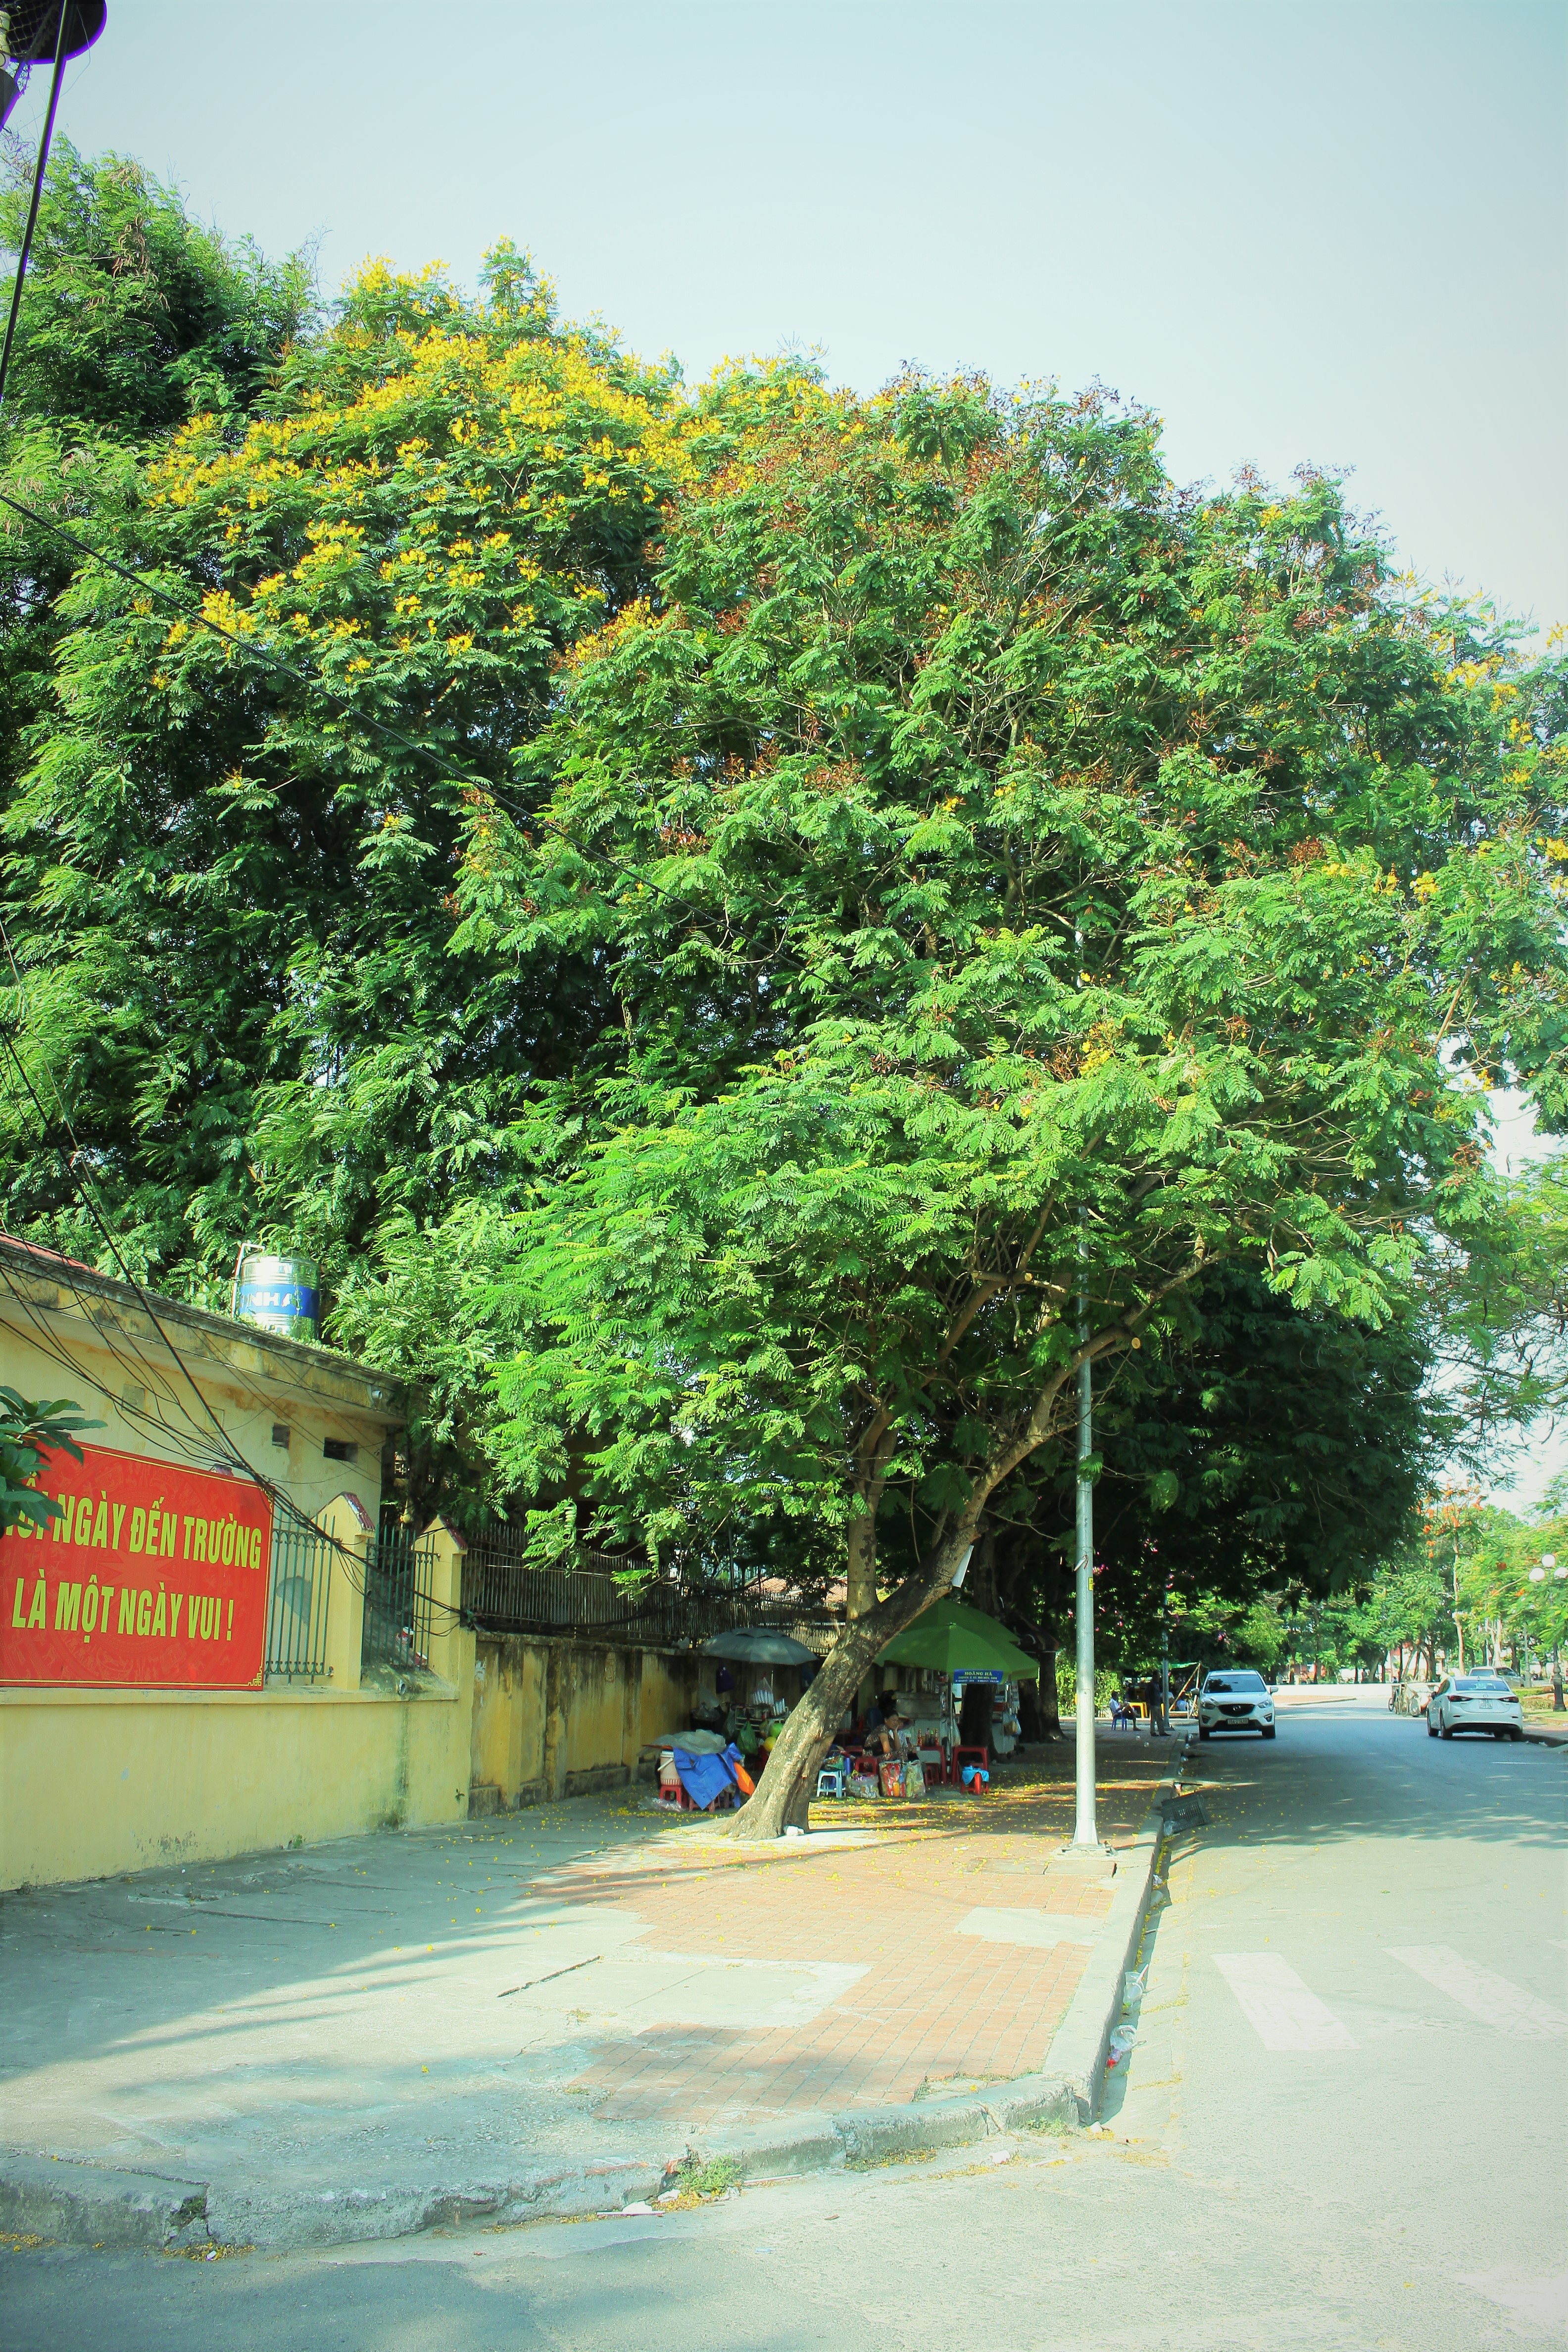 Người dân thành phố hoa phượng đỏ ủng hộ lựa chọn giải pháp bảo đảm an toàn nhưng không “lạm sát” cây xanh - Ảnh 6.